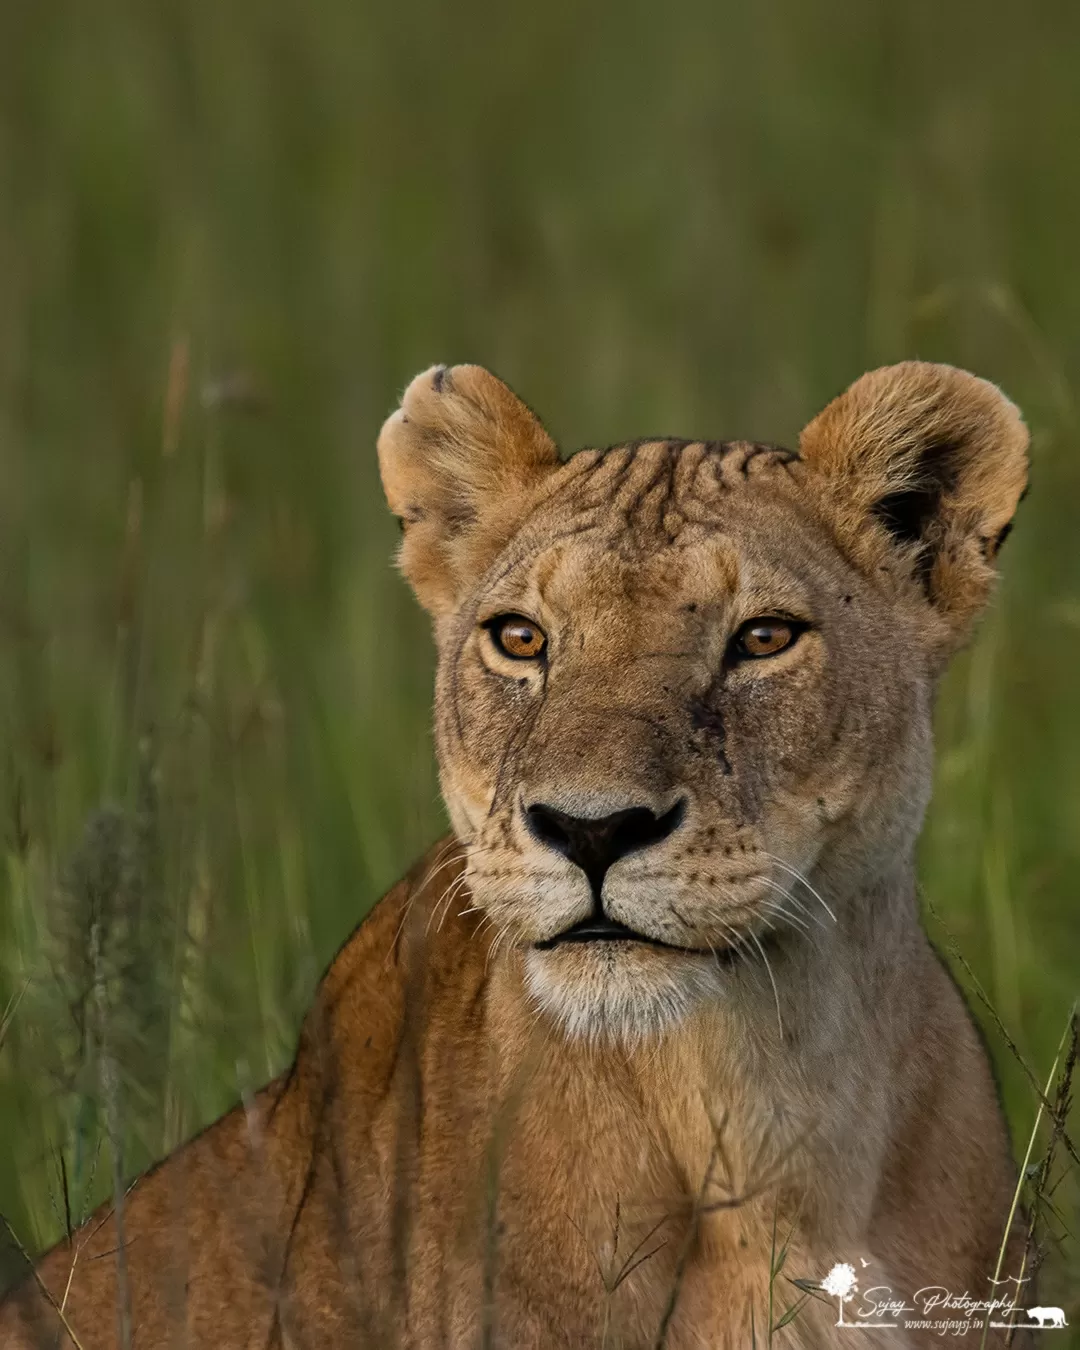 Photo of Masai Mara National Reserve By Sujay Jamkhandi